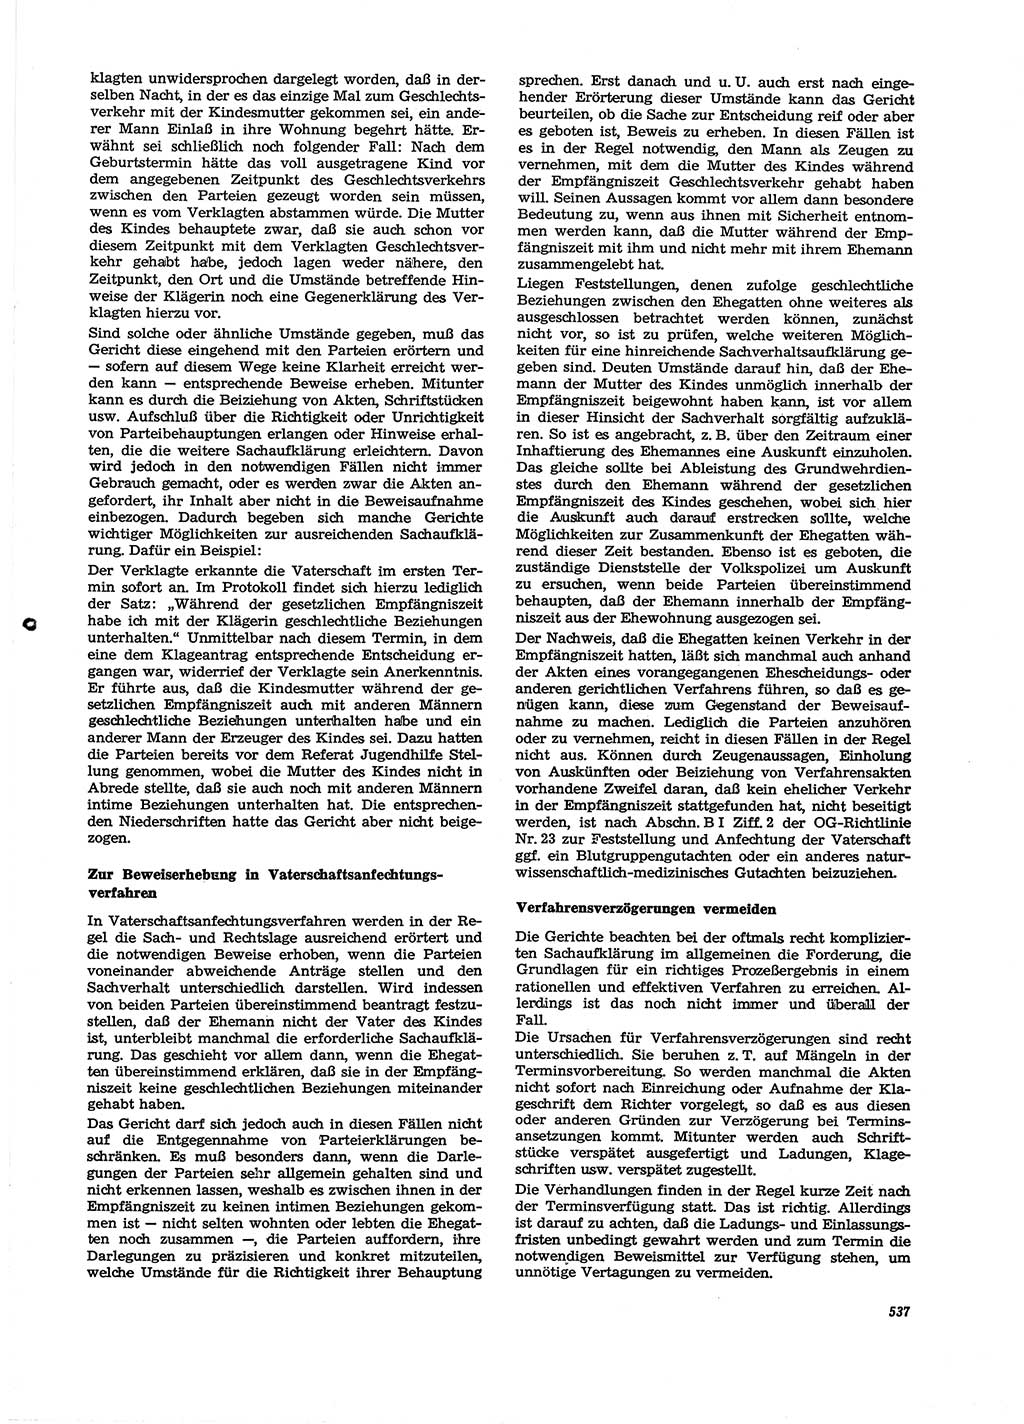 Neue Justiz (NJ), Zeitschrift für Recht und Rechtswissenschaft [Deutsche Demokratische Republik (DDR)], 29. Jahrgang 1975, Seite 537 (NJ DDR 1975, S. 537)